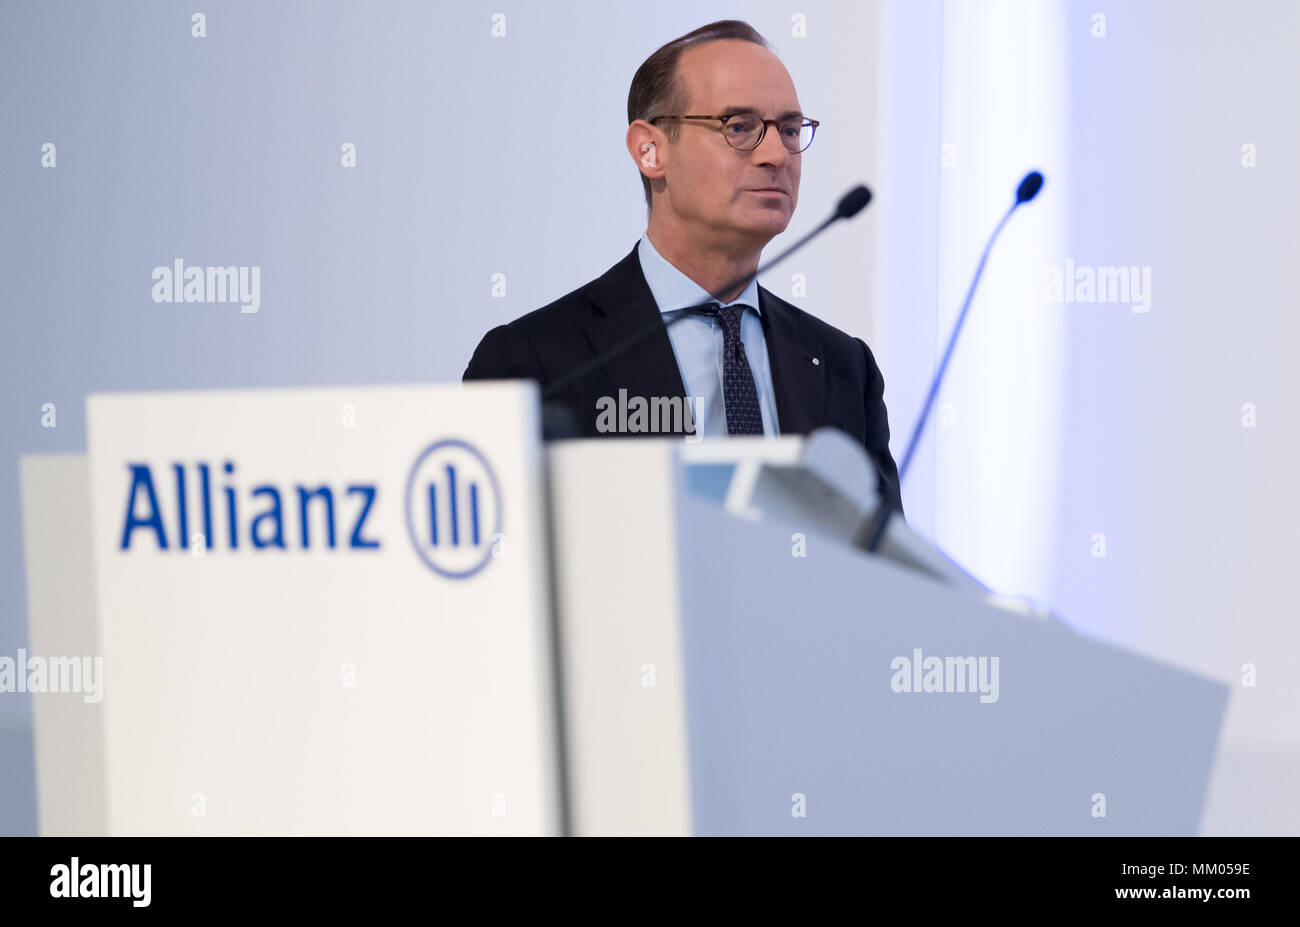 09 mai 2018, l'Allemagne, Munich : directeur général de la compagnie d'assurance Allianz SE, Oliver Baete, monter sur la scène avant le début de l'assemblée générale annuelle de la compagnie d'assurance Allianz. Photo : Sven Hoppe/dpa Banque D'Images